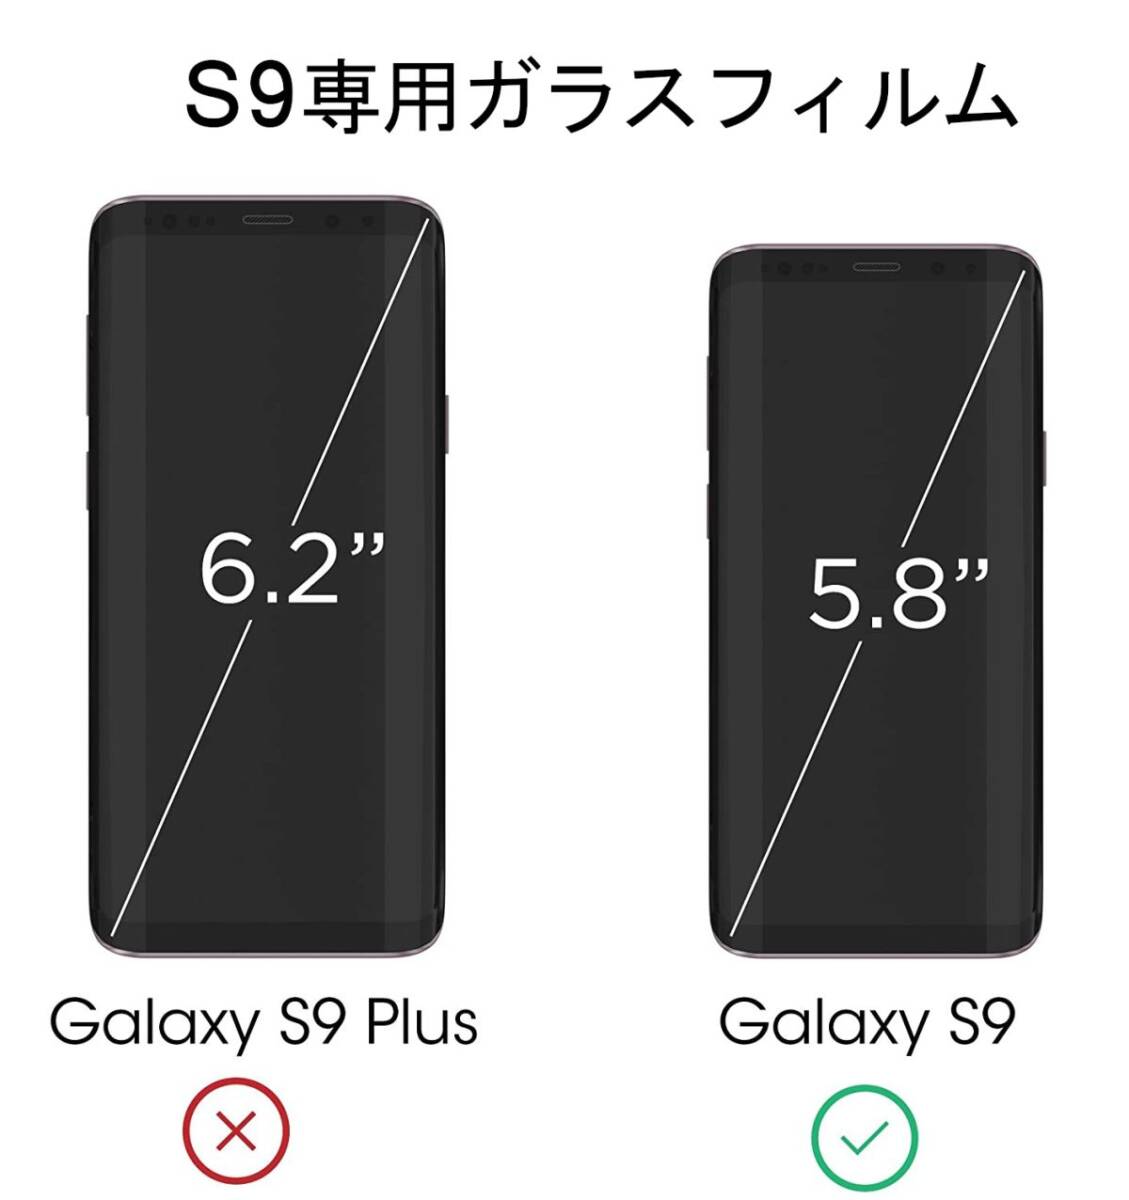 3枚組 Galaxy S9 ガラスフィルム ブラック 即購入OK 3Ｄ曲面全面保護 galaxyS9 末端吸着のみ 破損保障あり ギャラクシーエス9 paypay